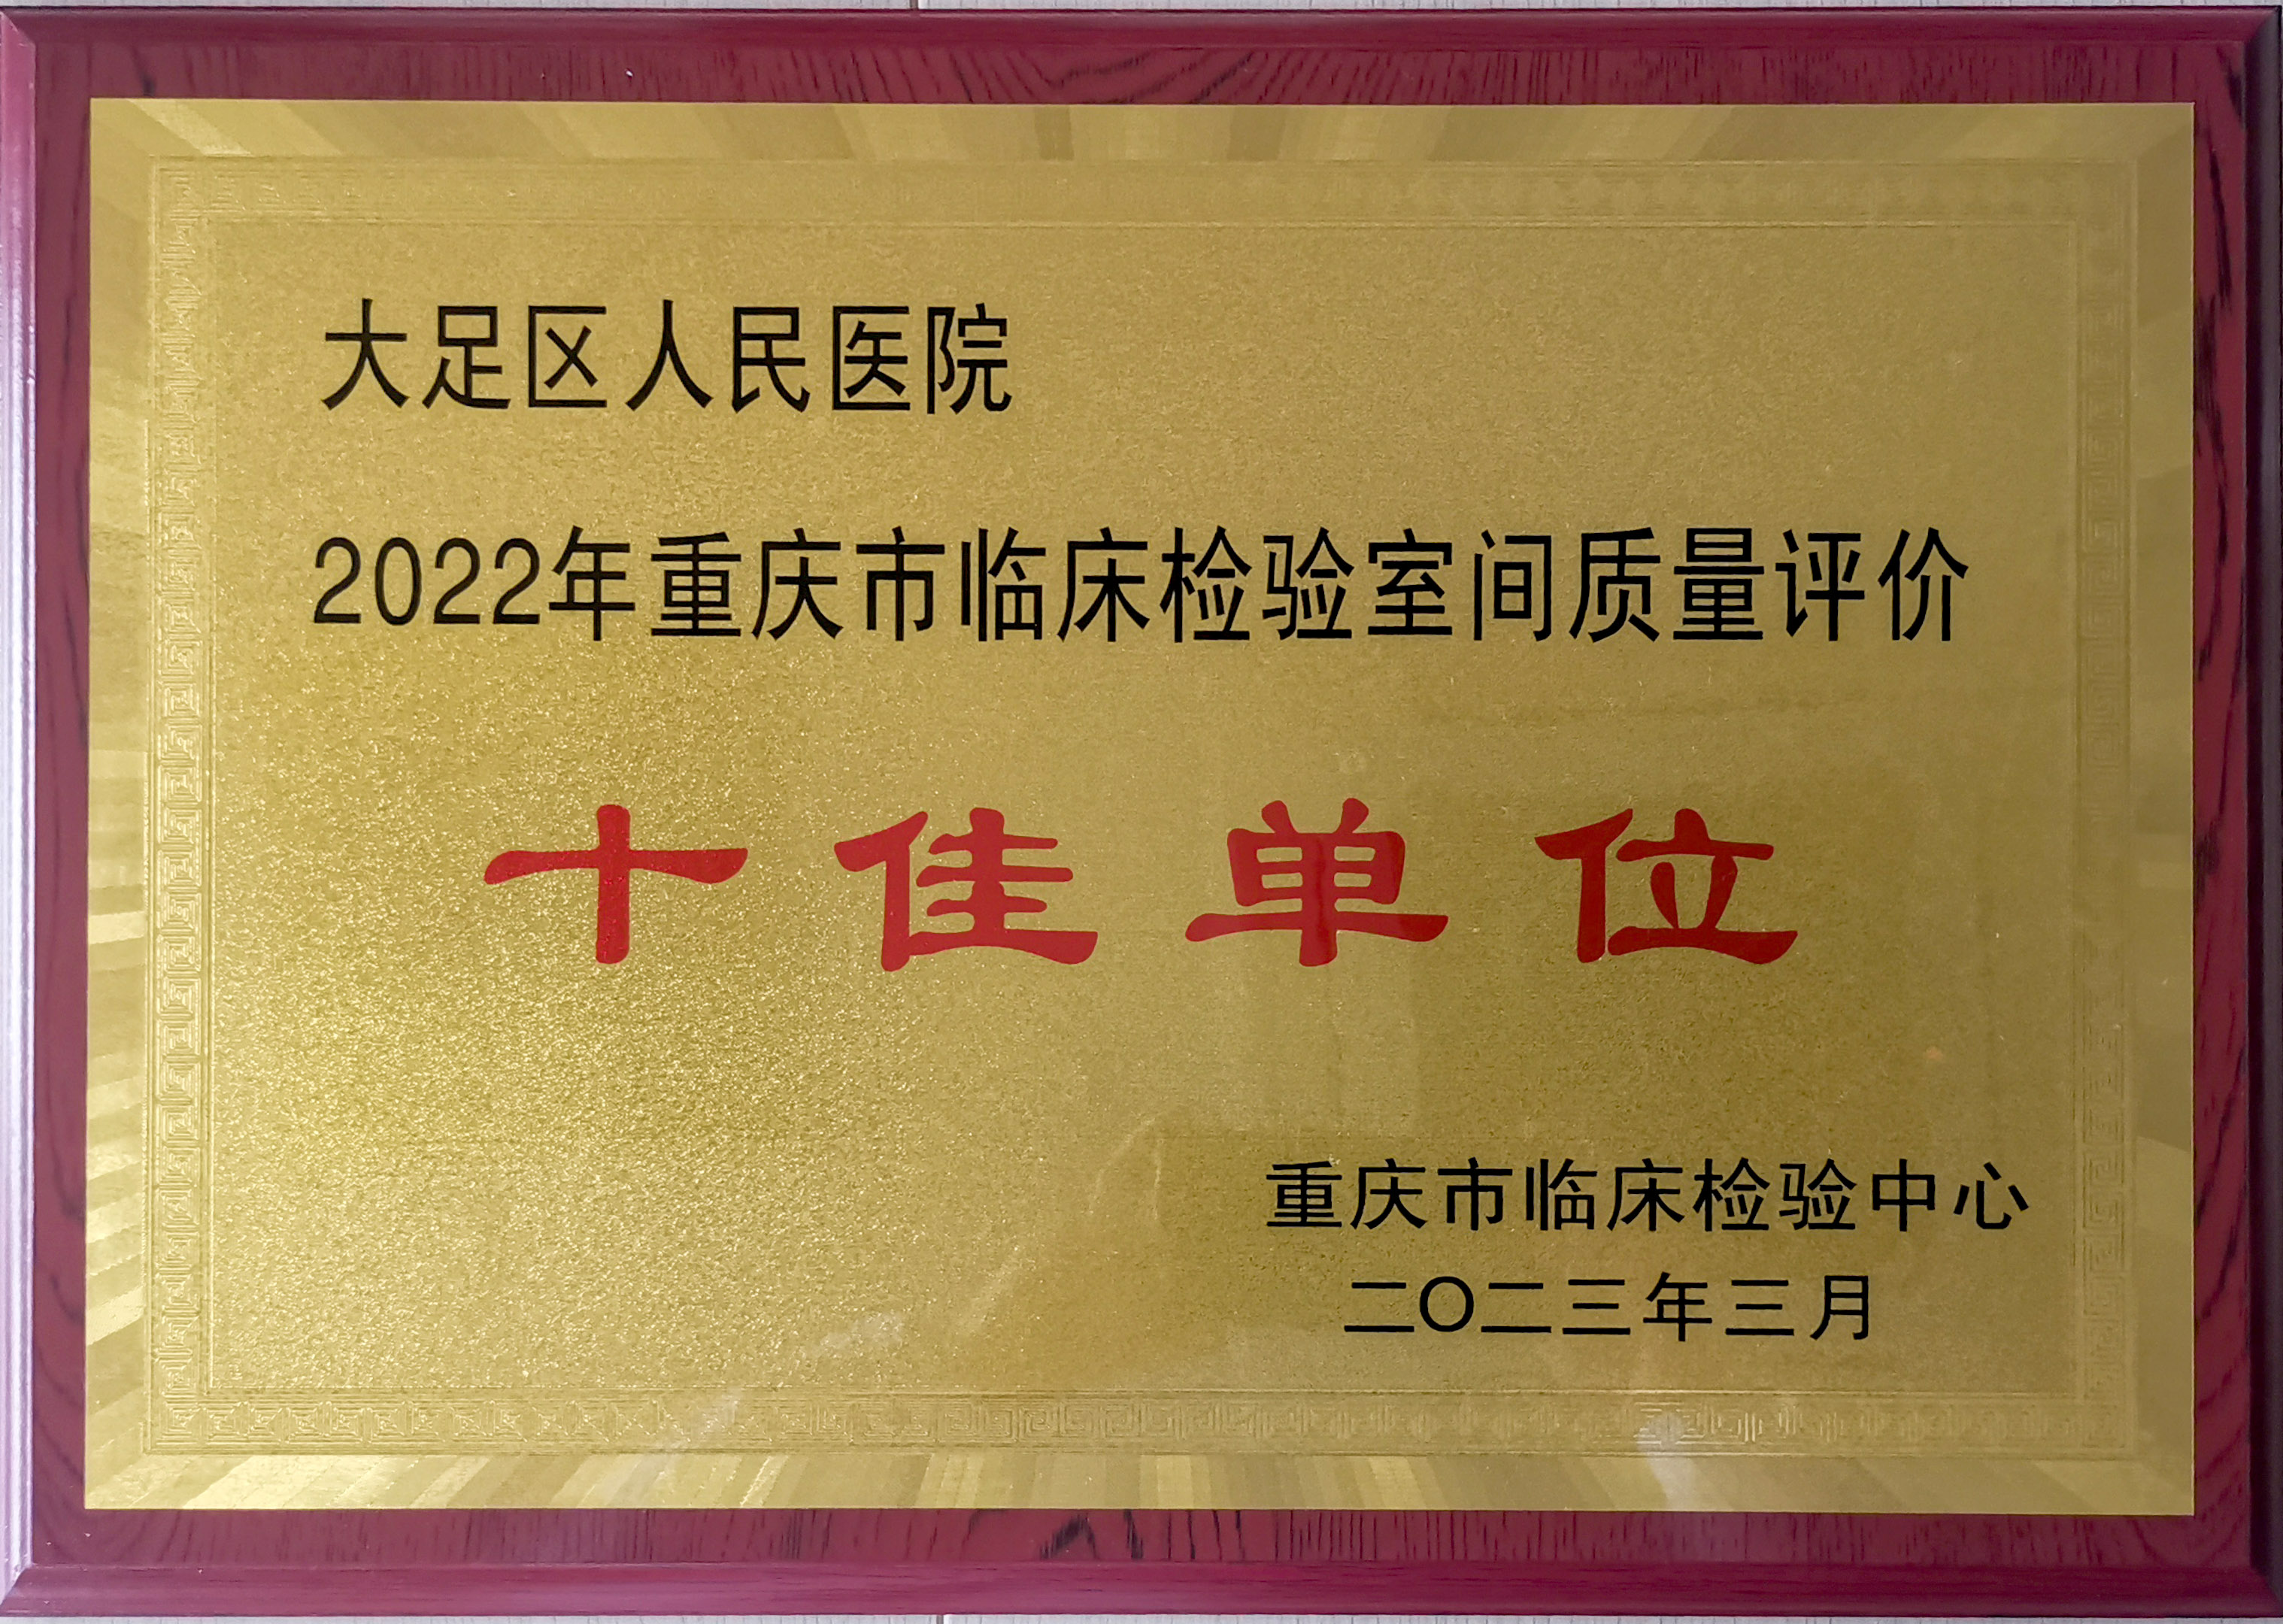 厉害！大足区人民医院检验科连续10年被评为“重庆市临床检验室间质量评价十佳单位”称号